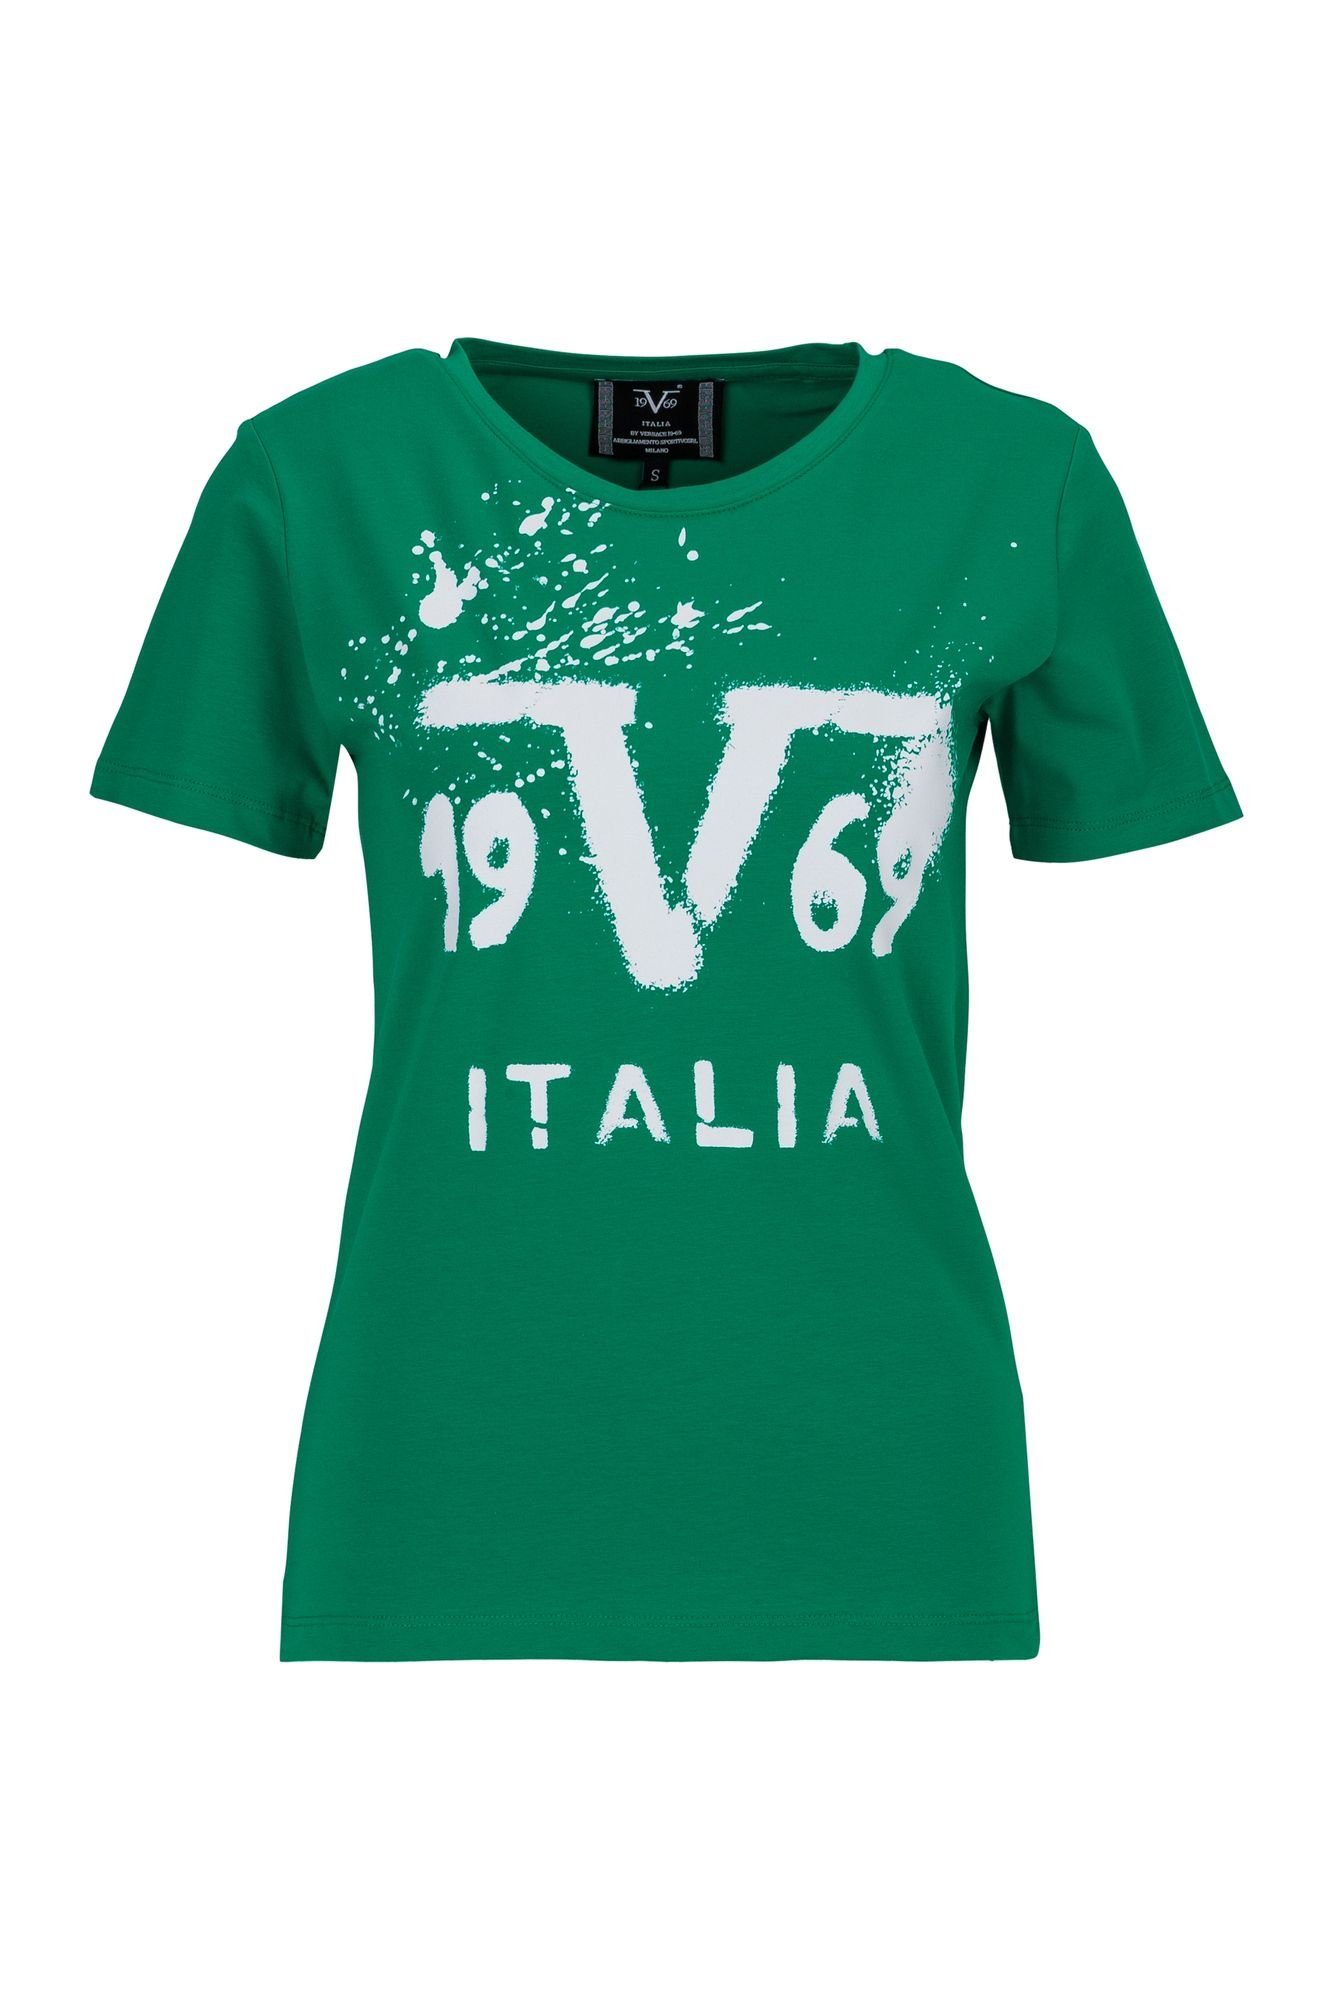 Chiara Versace T-Shirt 19V69 by Italia